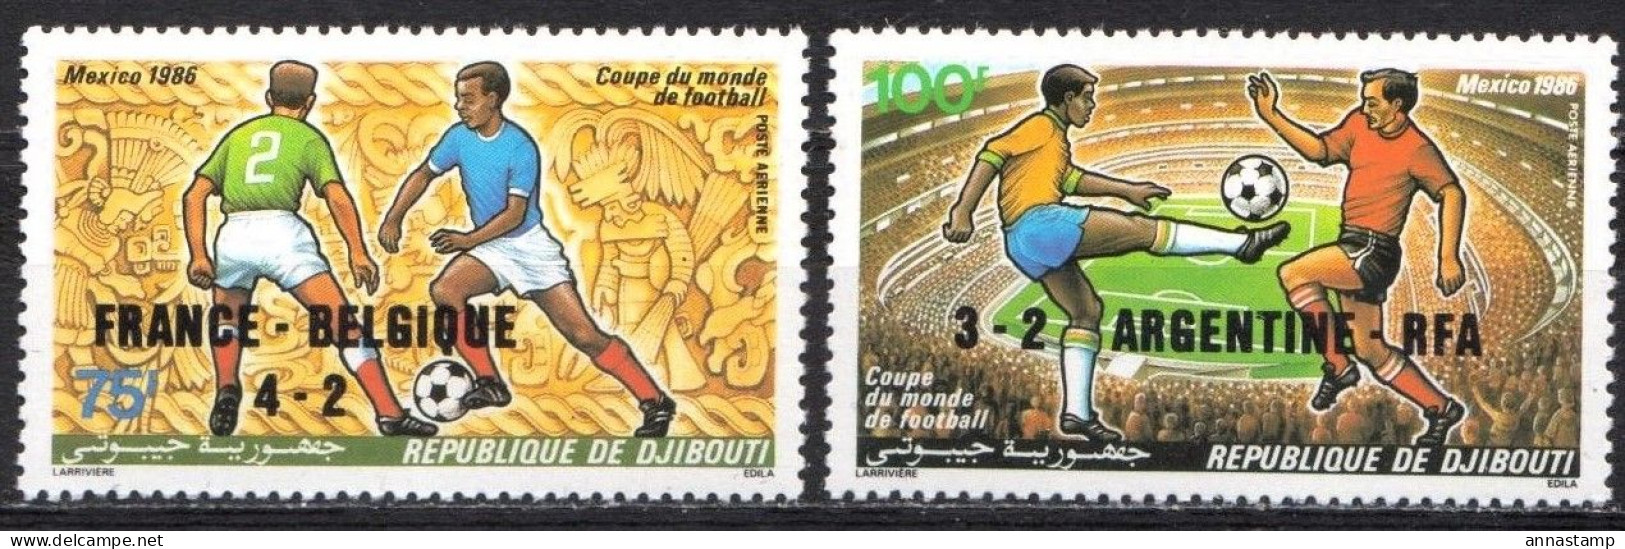 Djibouti MNH Overprinted Pair - 1986 – Mexico